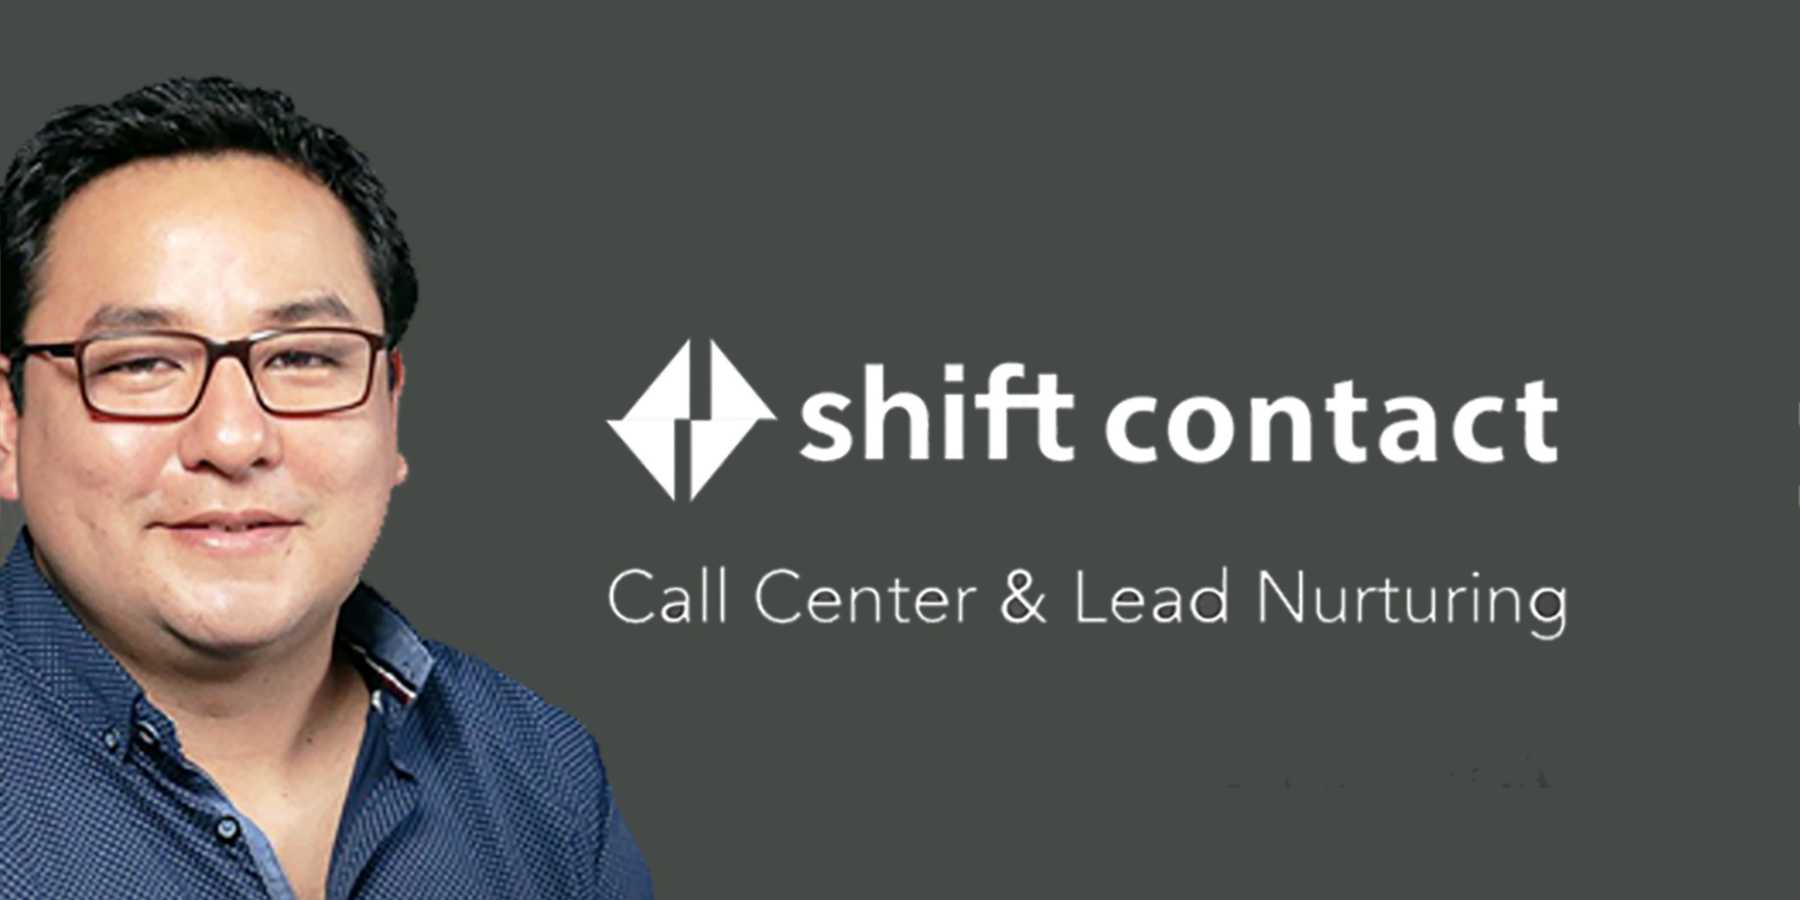 El Grupo Mood presenta su nueva unidad de negocio Shift Contac